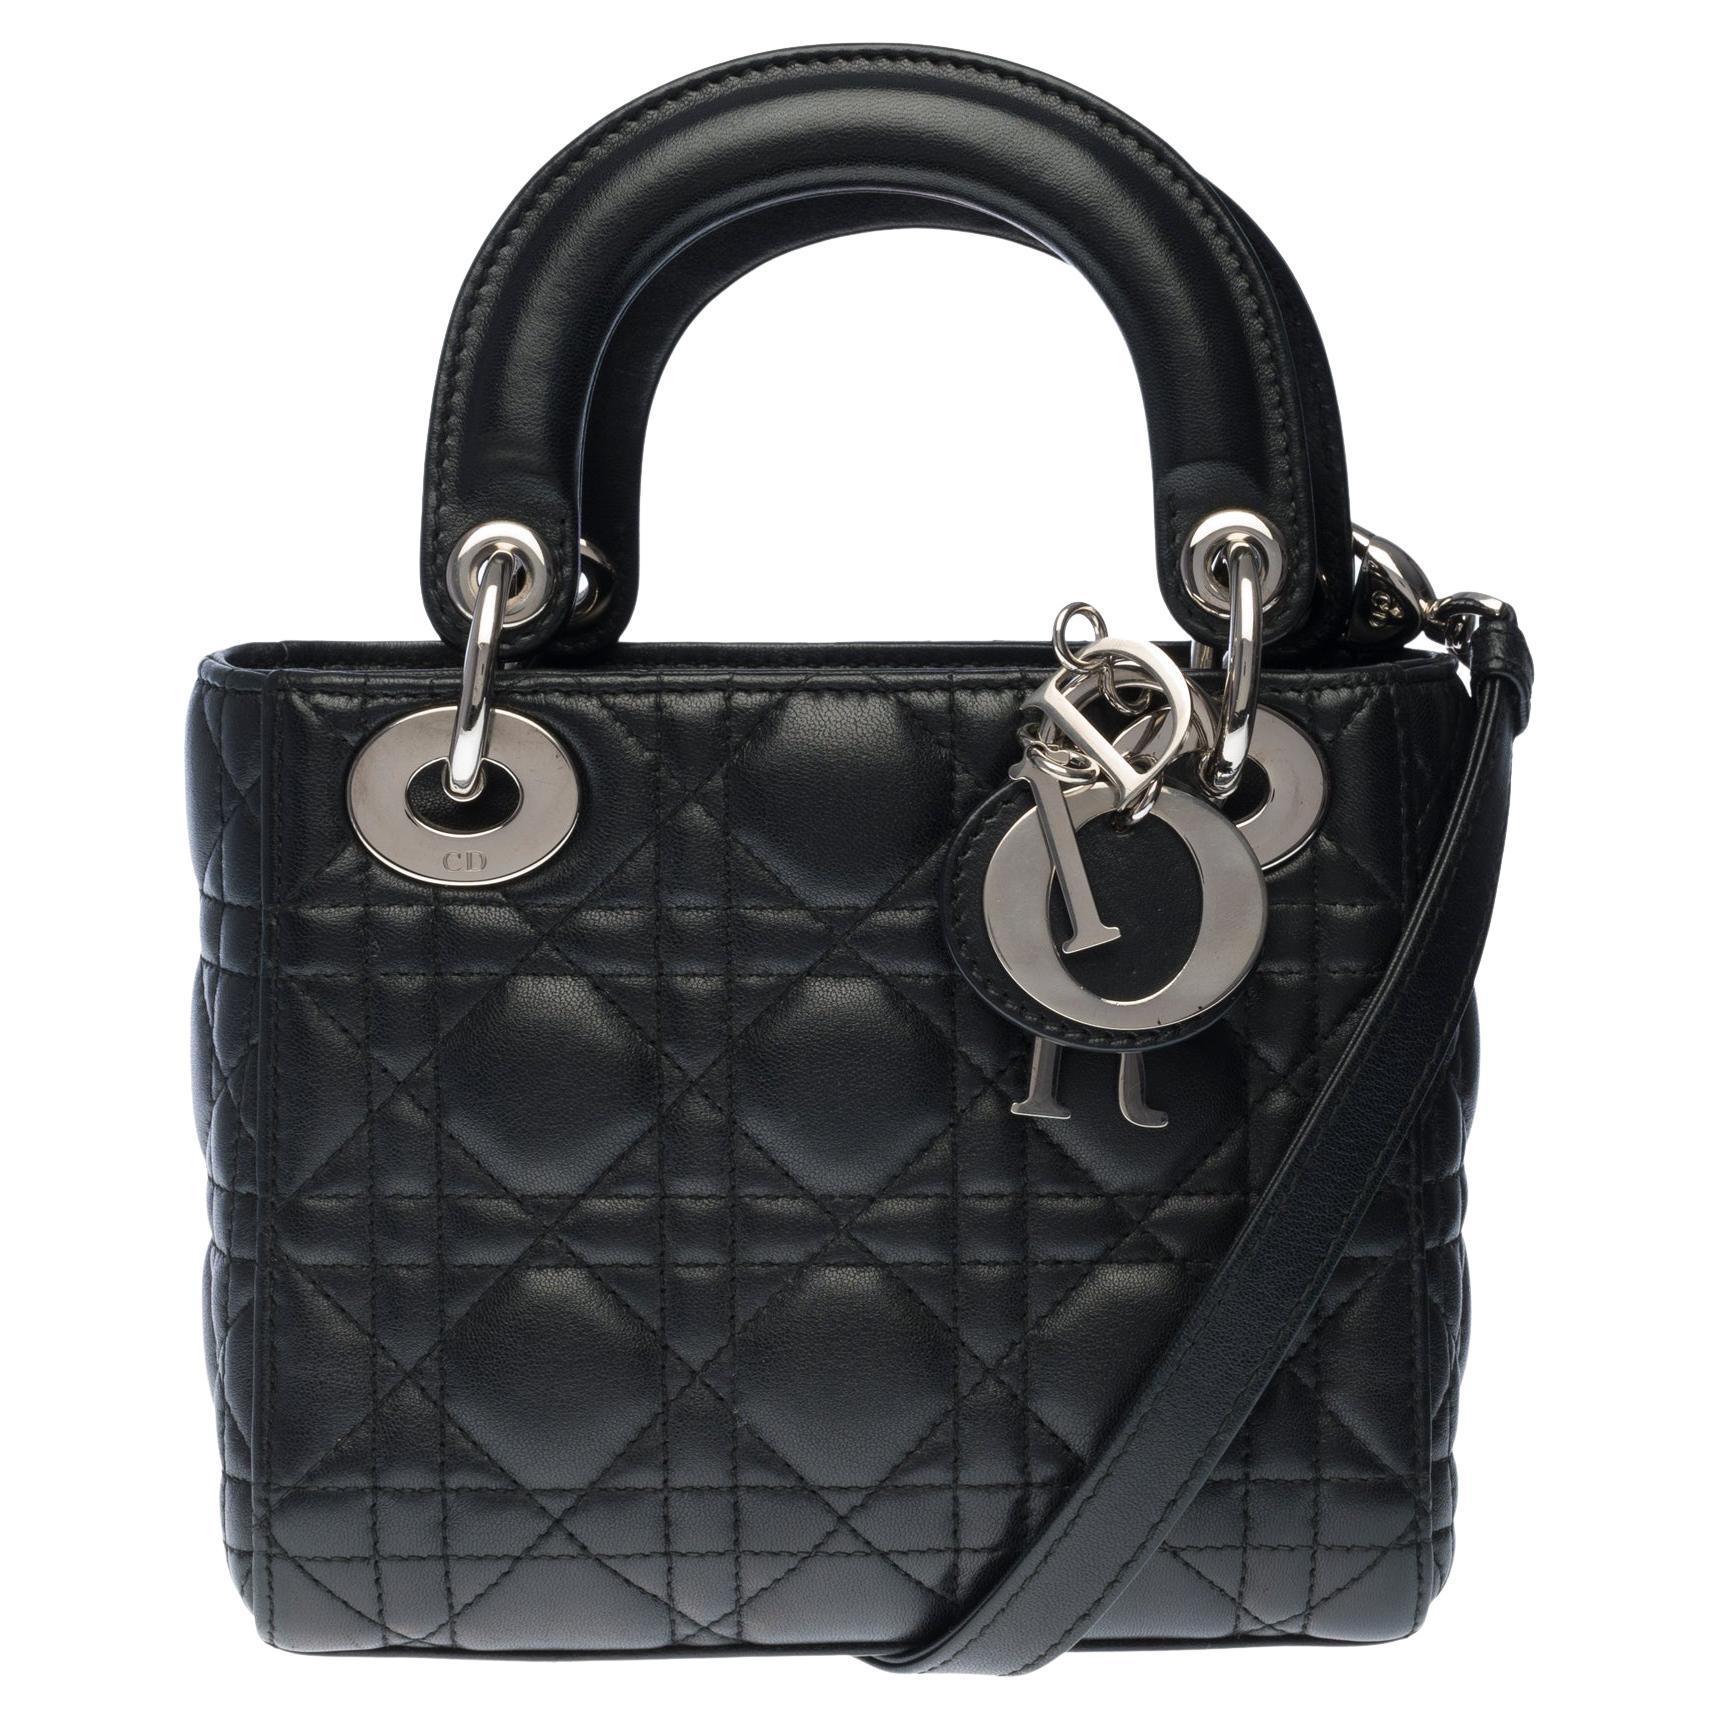  Christian Dior Lady Dior Mini handbag strap in black cannage leather, SHW